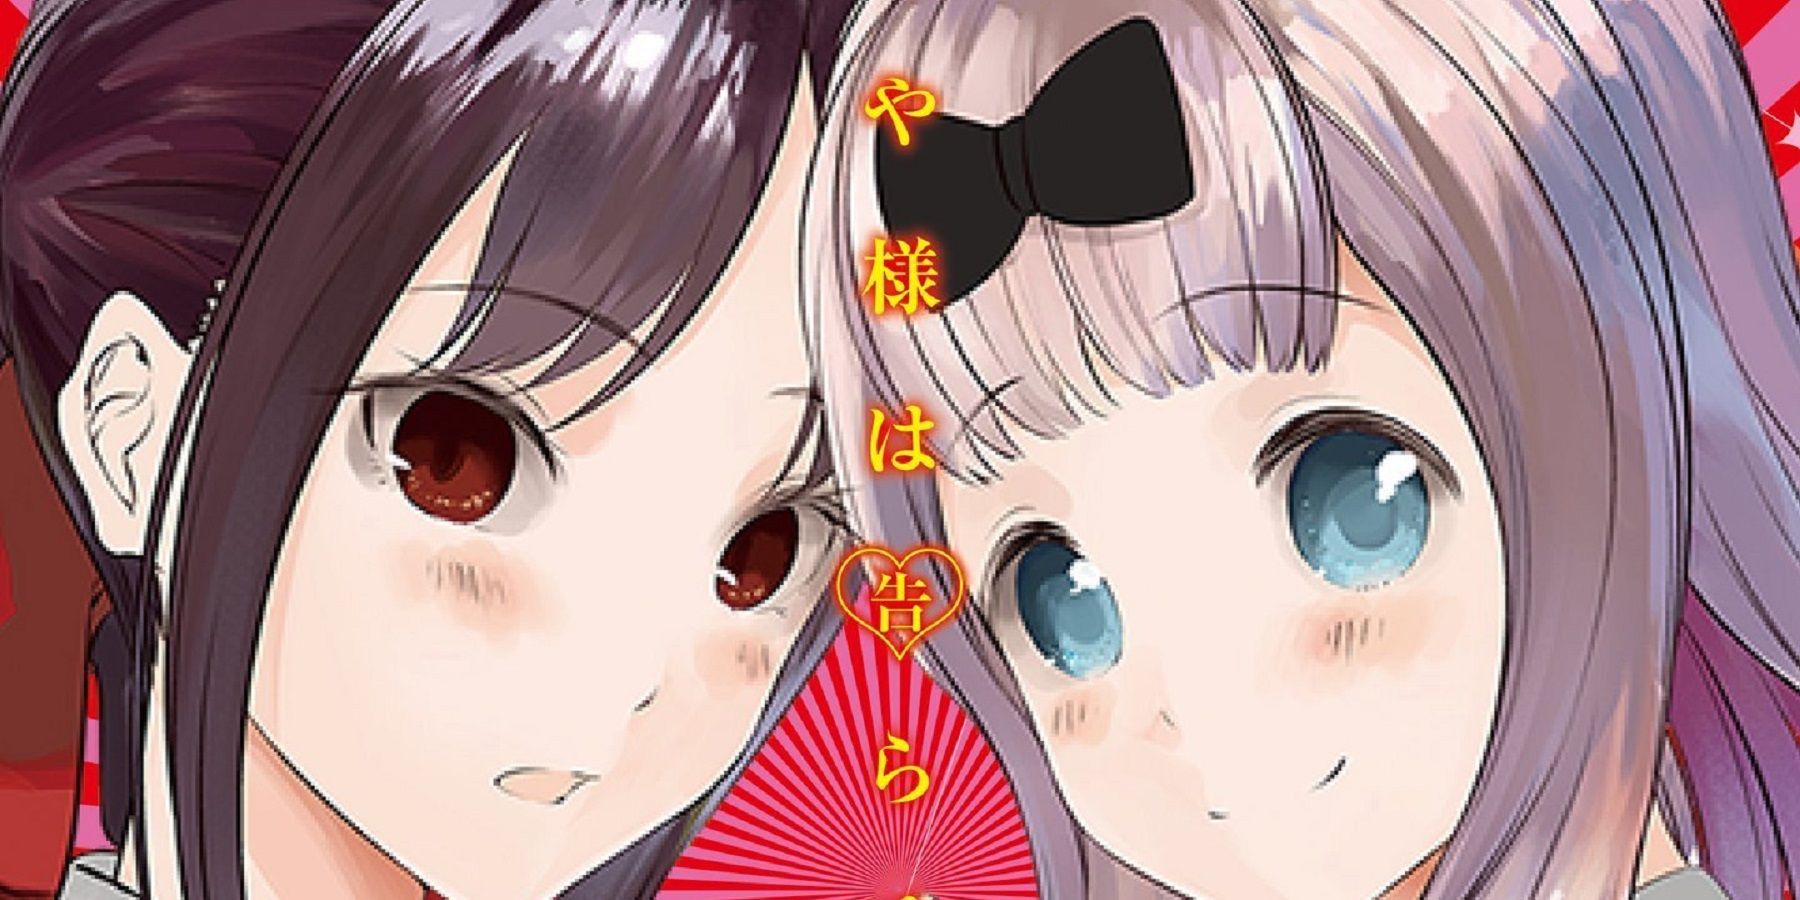 kaguya-manga-cover-feature